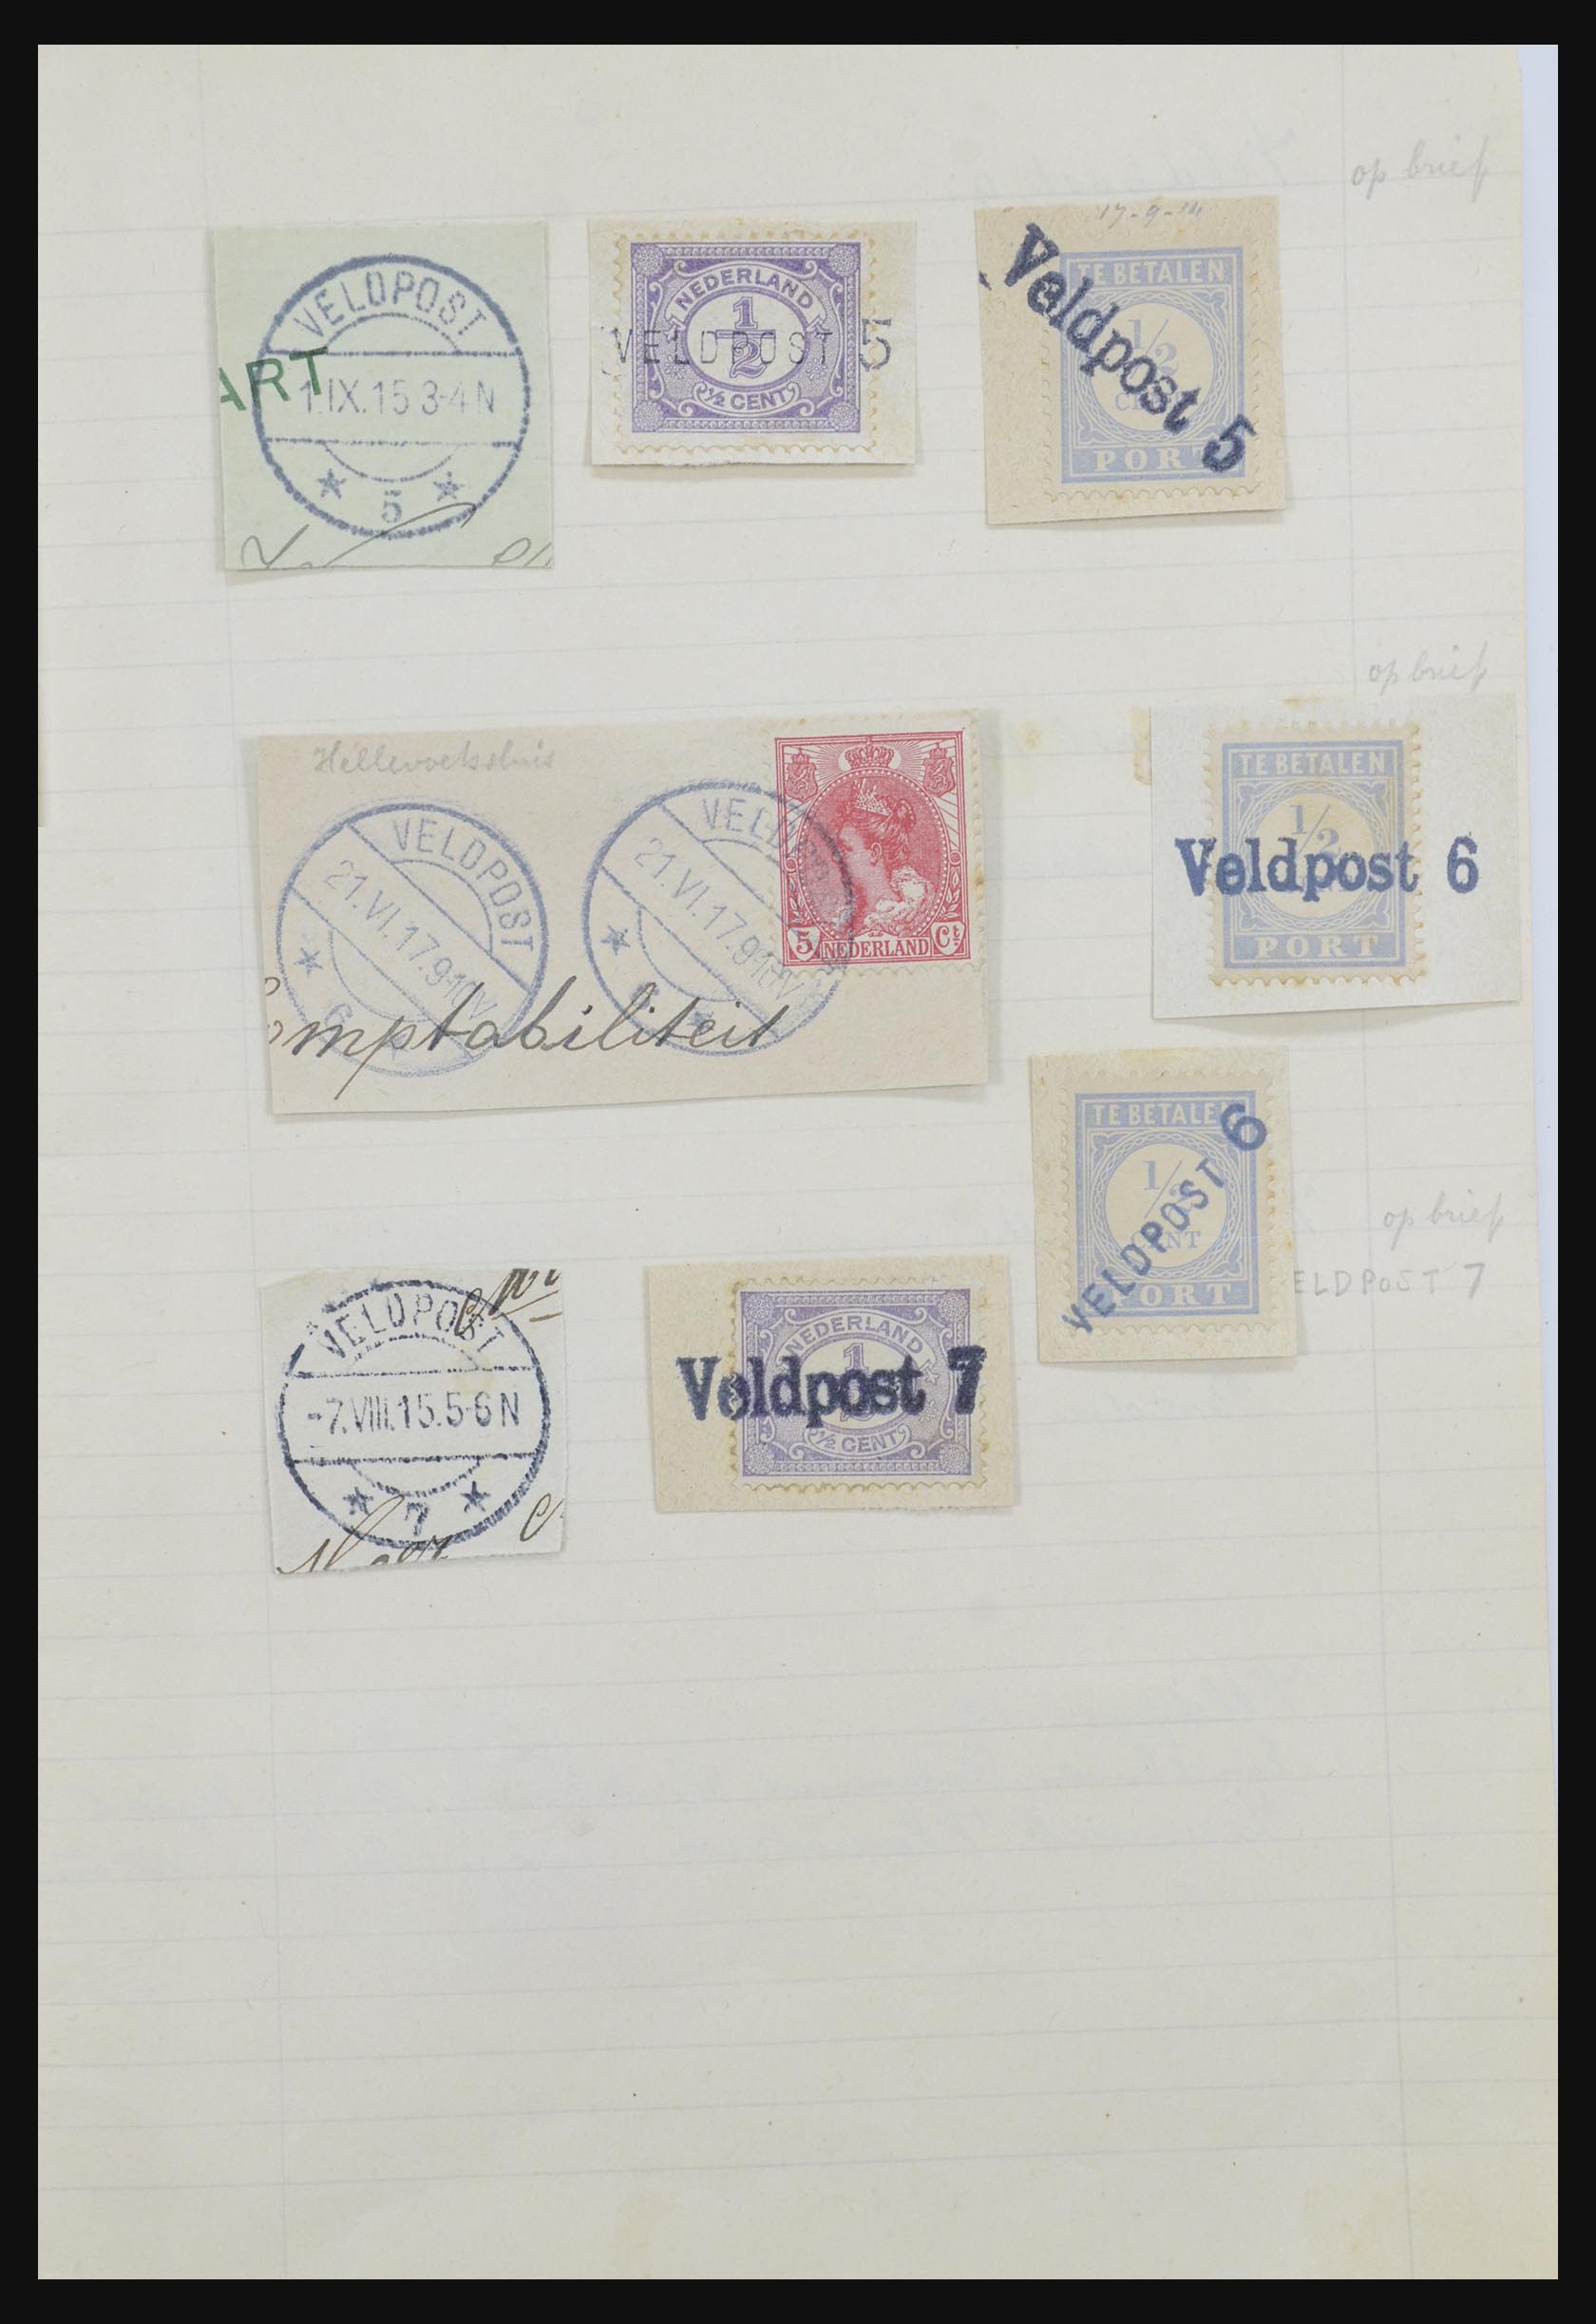 31976 008 - 31976 Netherlands cancels 1900-1940.